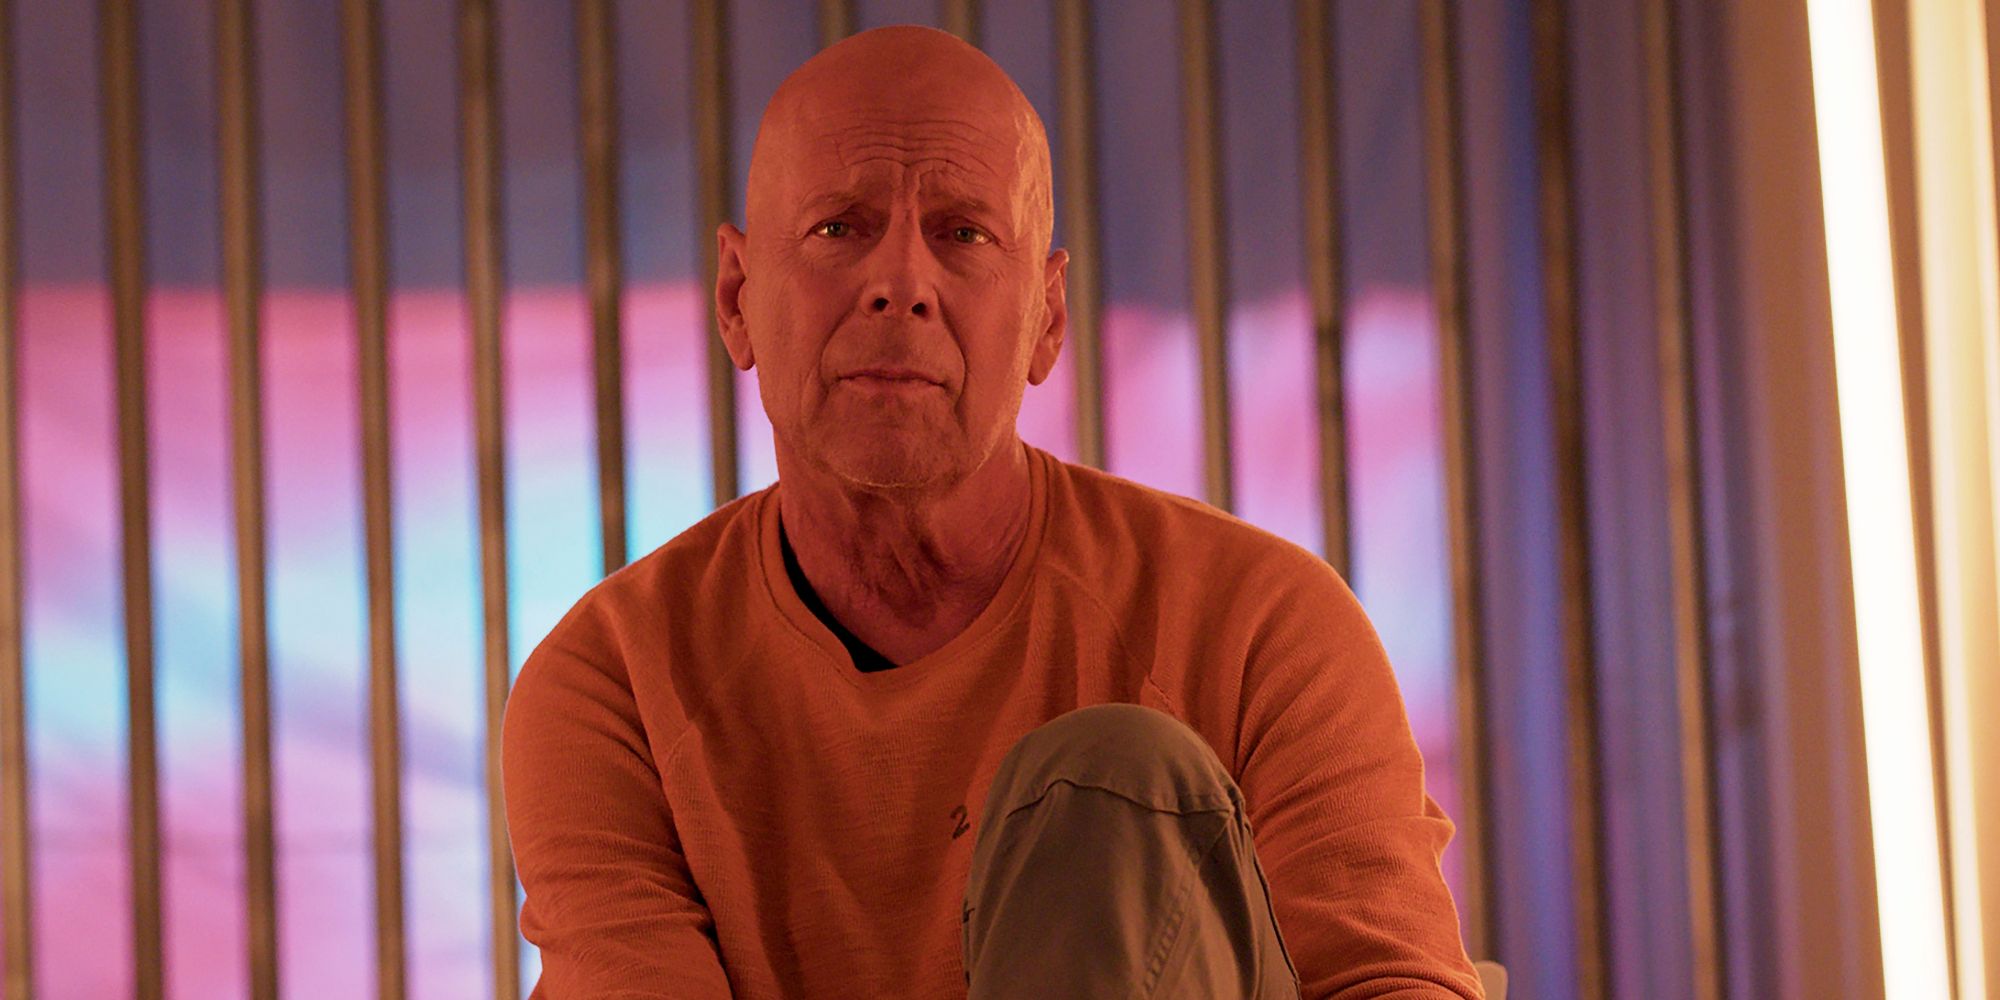 Revisión de Apex: Bruce Willis hace poco para elevar el cliché de género desordenado y derivado